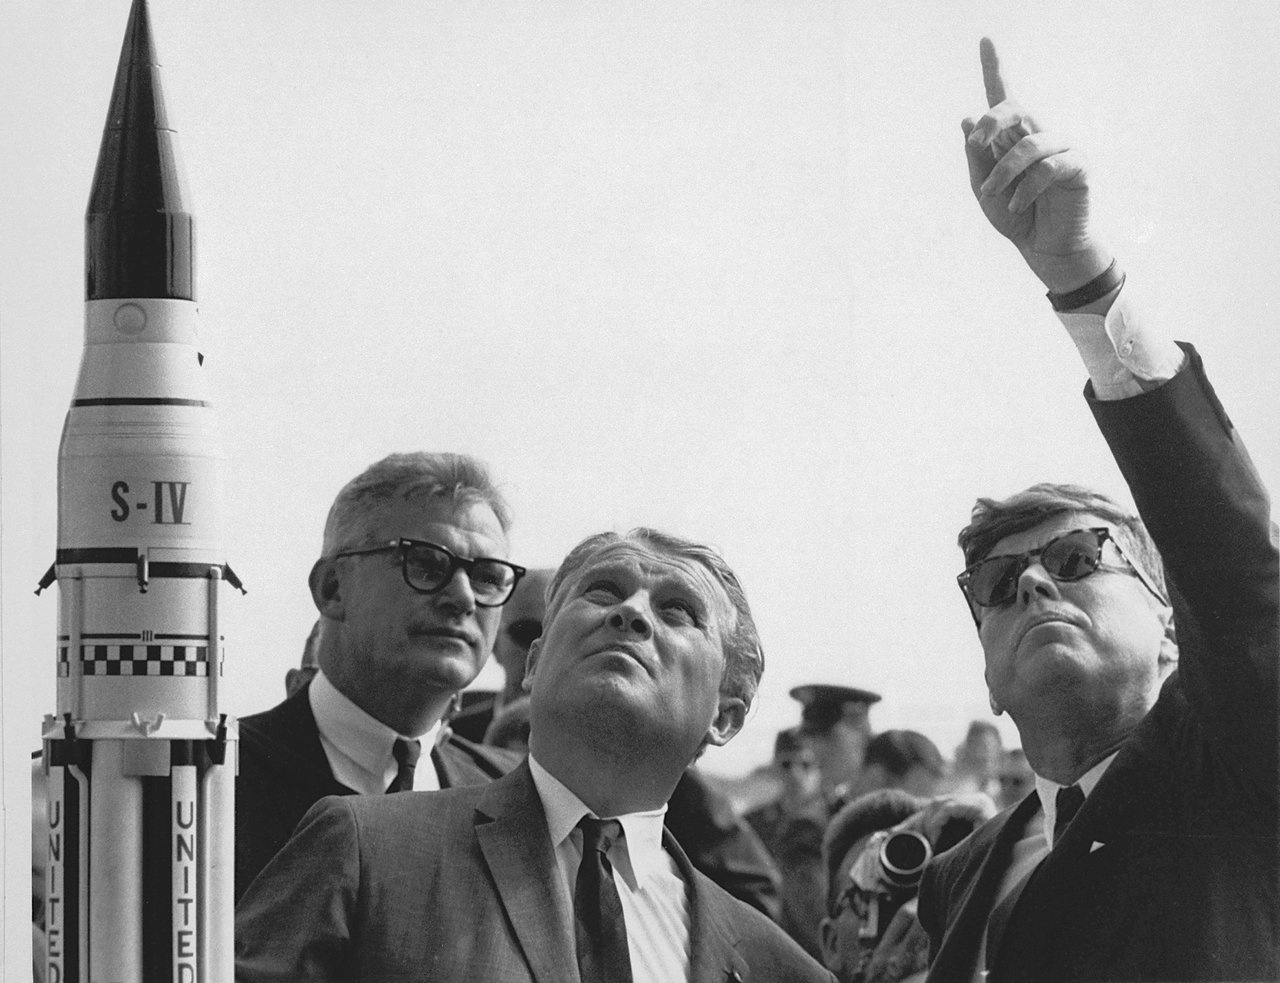 Директор Центра космических полётов им. Маршалла (MSFC) доктор Вернер фон Браун (в центре) объясняет систему запуска «Сатурн» президенту США Джону Ф. Кеннеди (справа) на мысе Канаверал, Флорида.